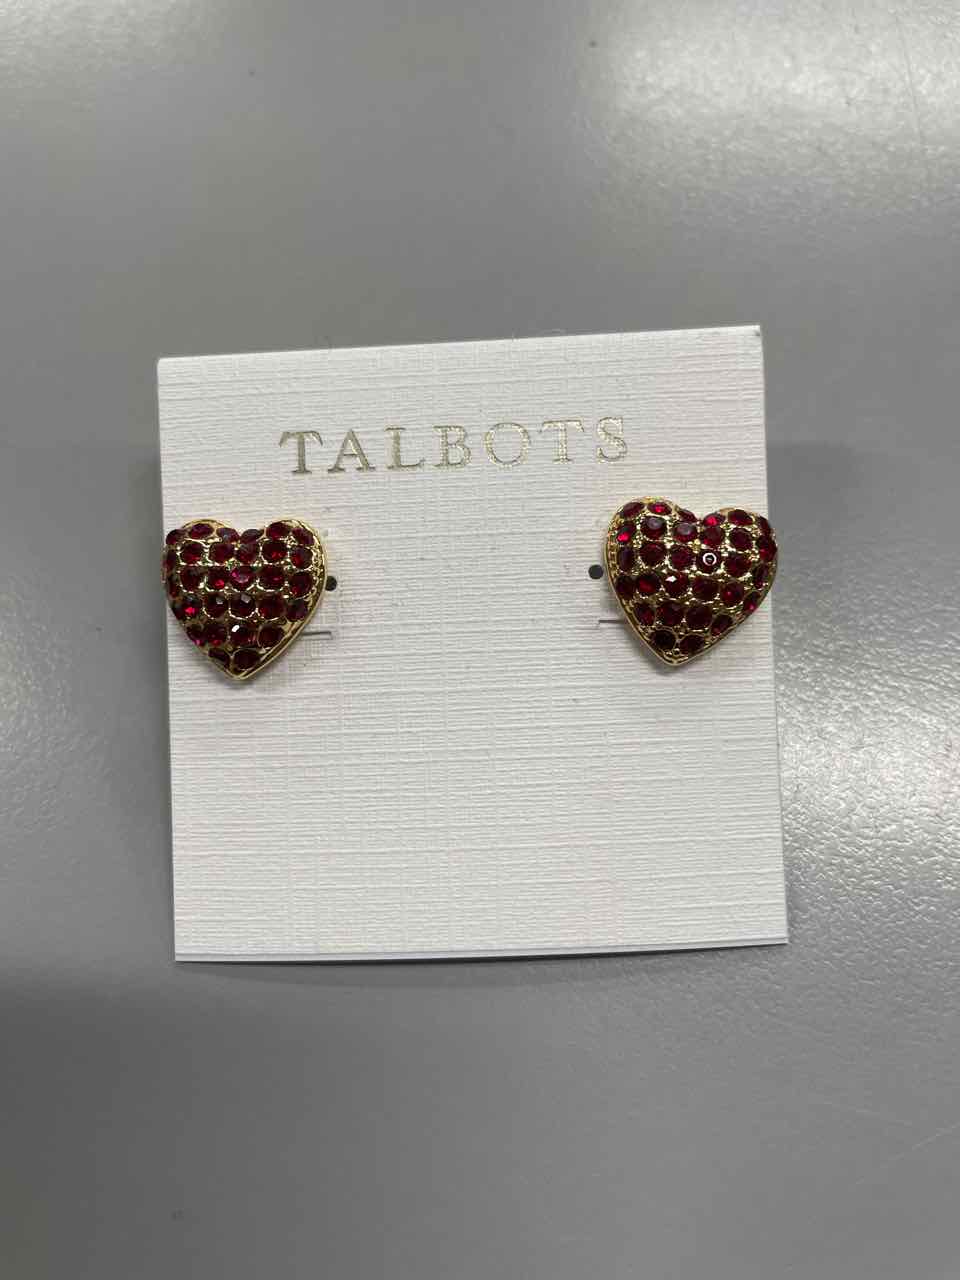 Jewelry - Talbots Earrings